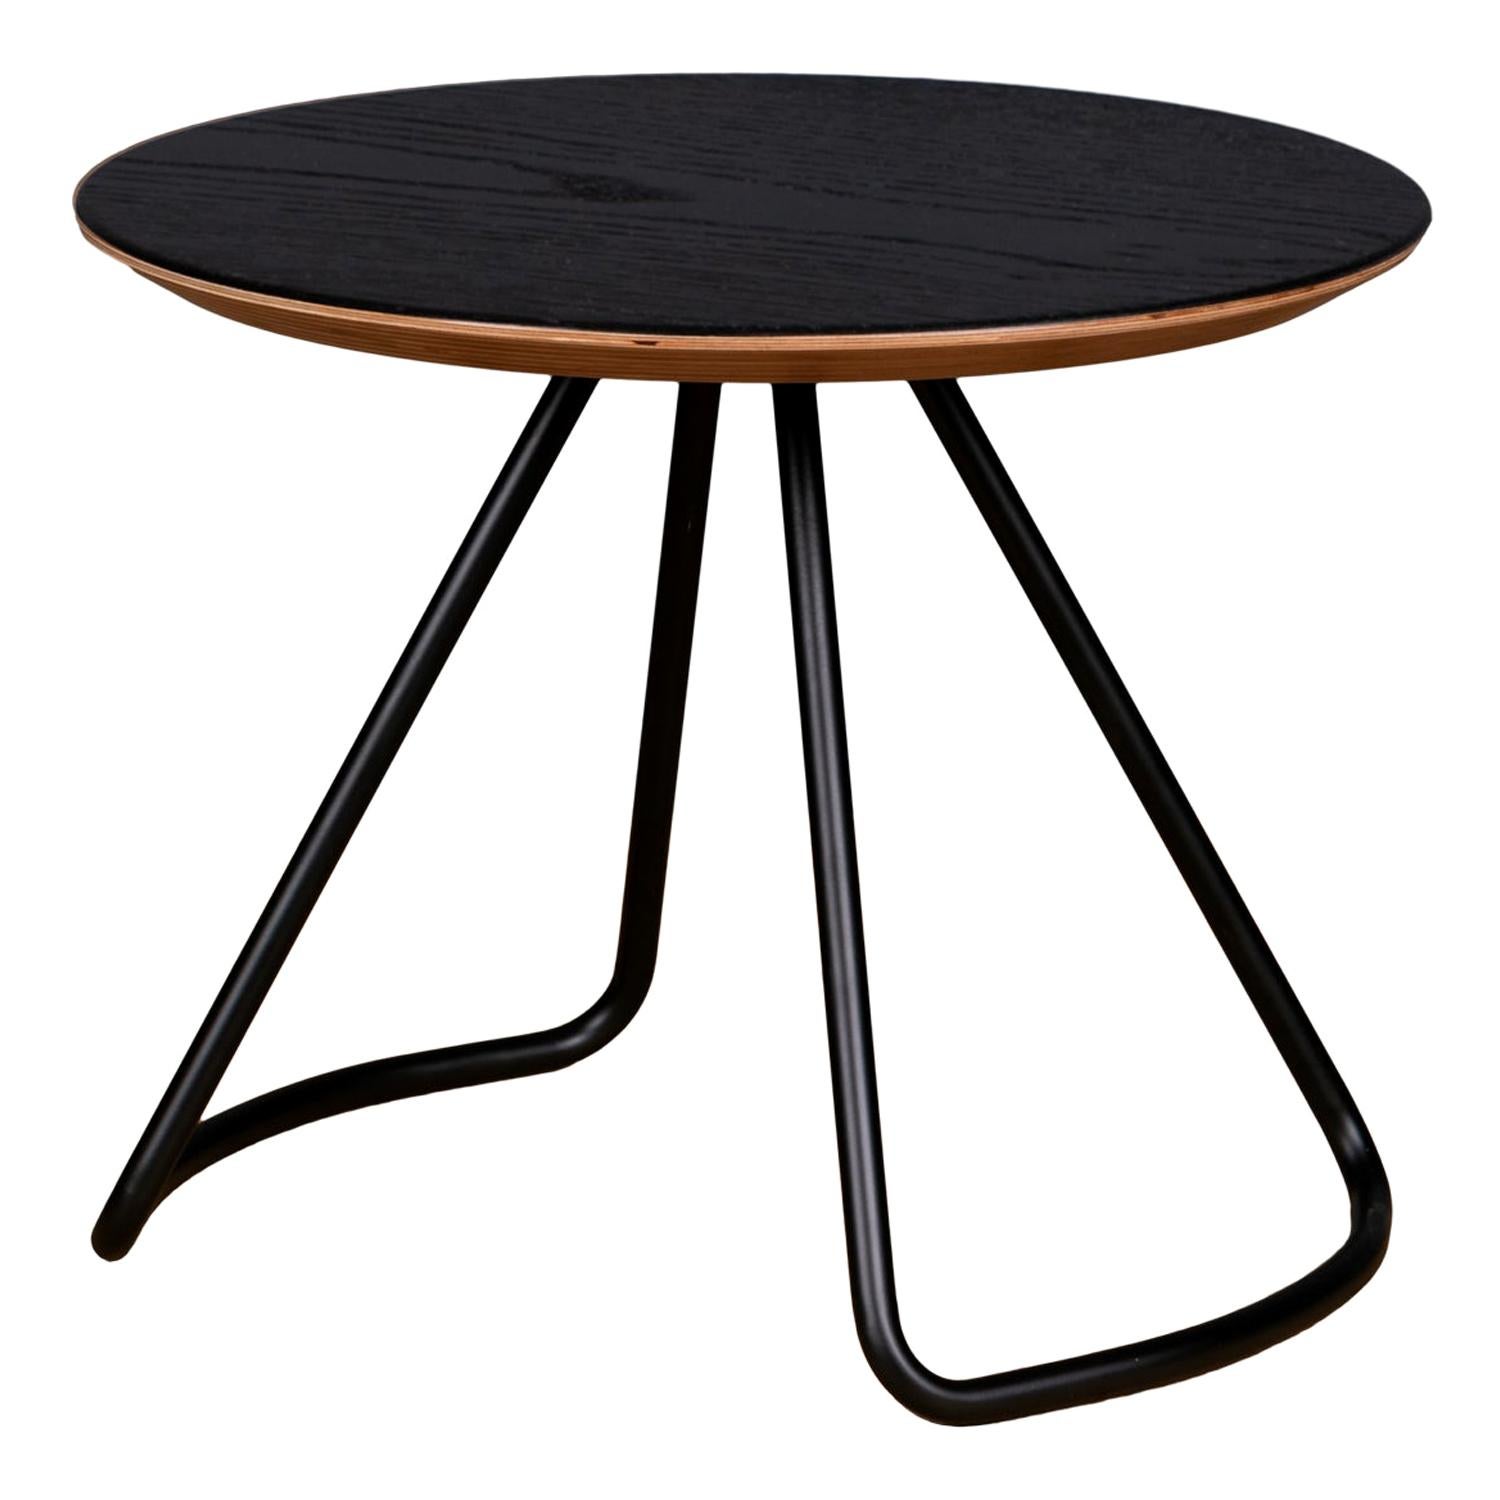 Table basse Sama, table basse moderne contemporaine et minimaliste en chêne noir et métal noir